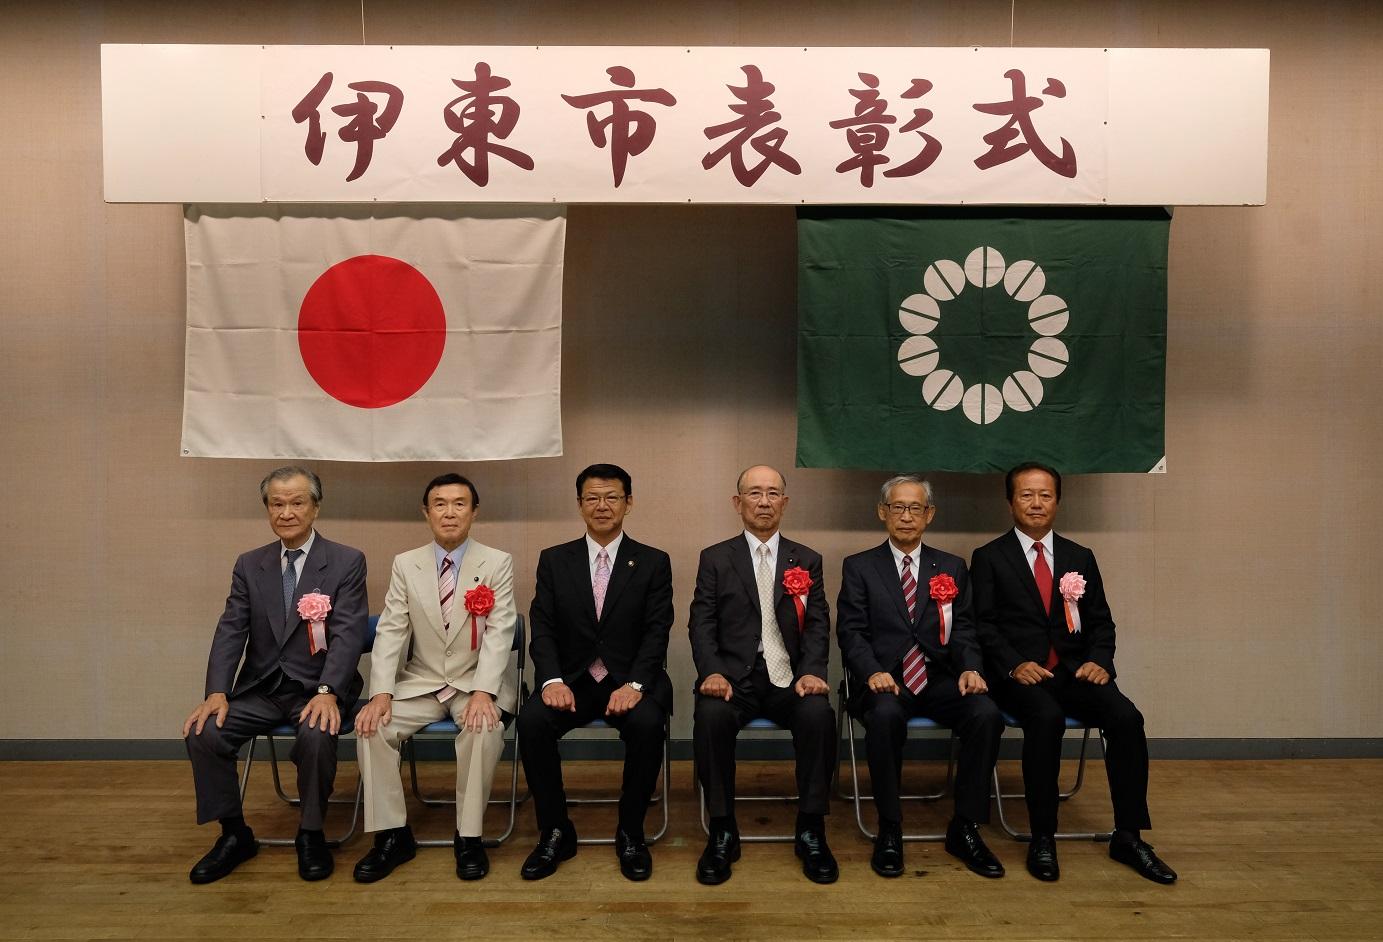 2018年8月10日 表彰された7人と共に着席する市長の写真